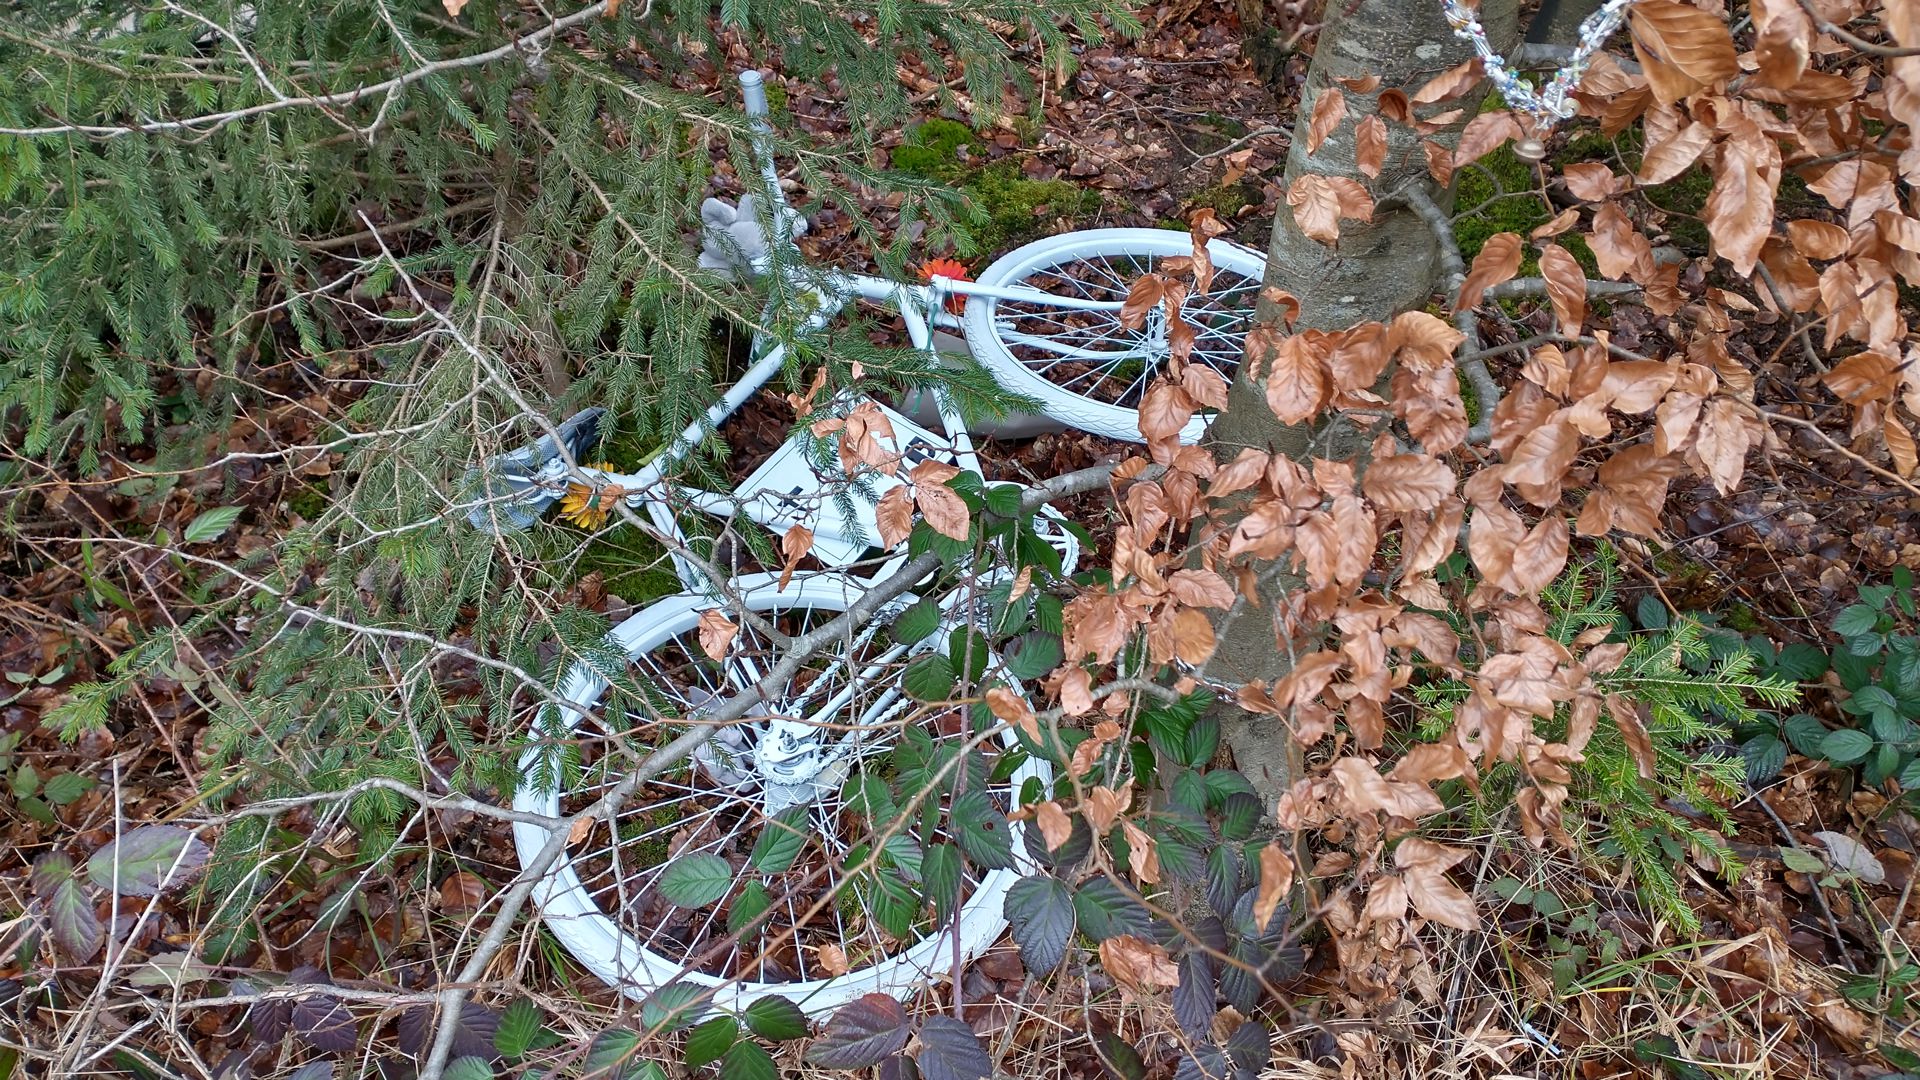 Das weiße Ghostbike wurde bei der Gedenkfeier am Unfallort aufgestellt. Es ist zwar immer noch einen Baum gekettet, aber Unbekannte haben es in den Wald geworfen.